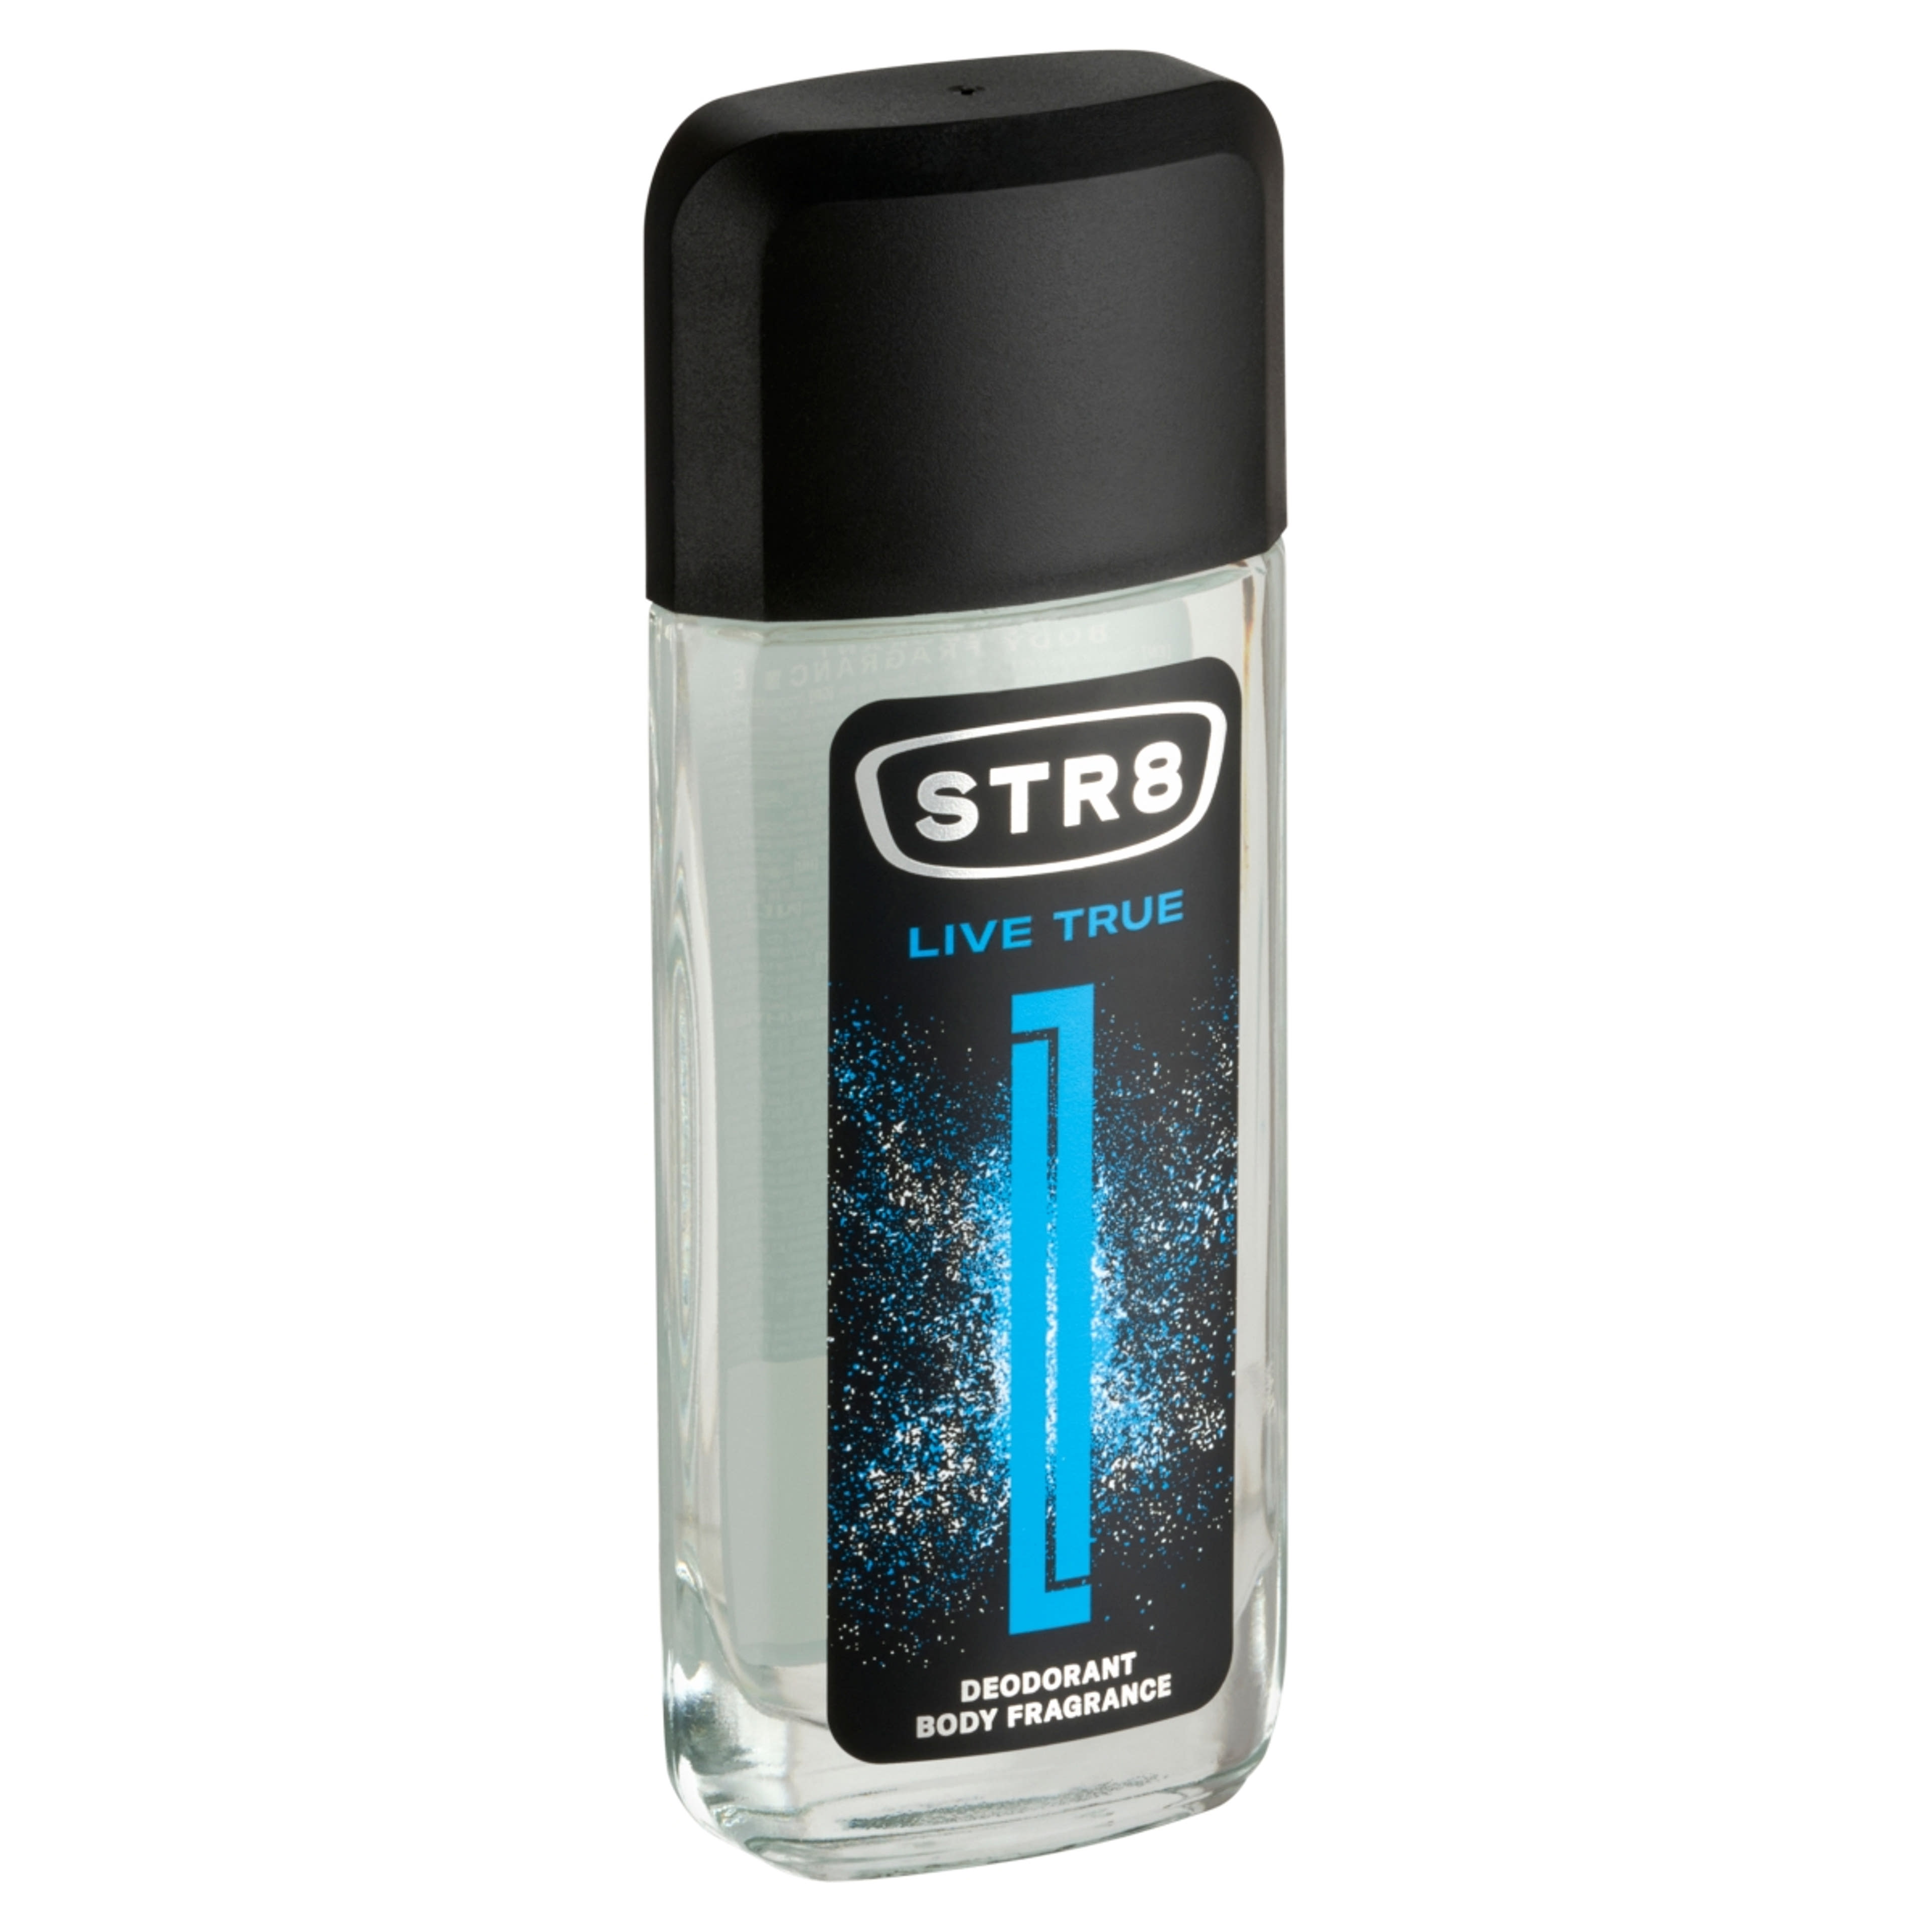 STR8 Live True Body Fragrance parfüm-spray - 85 ml-3